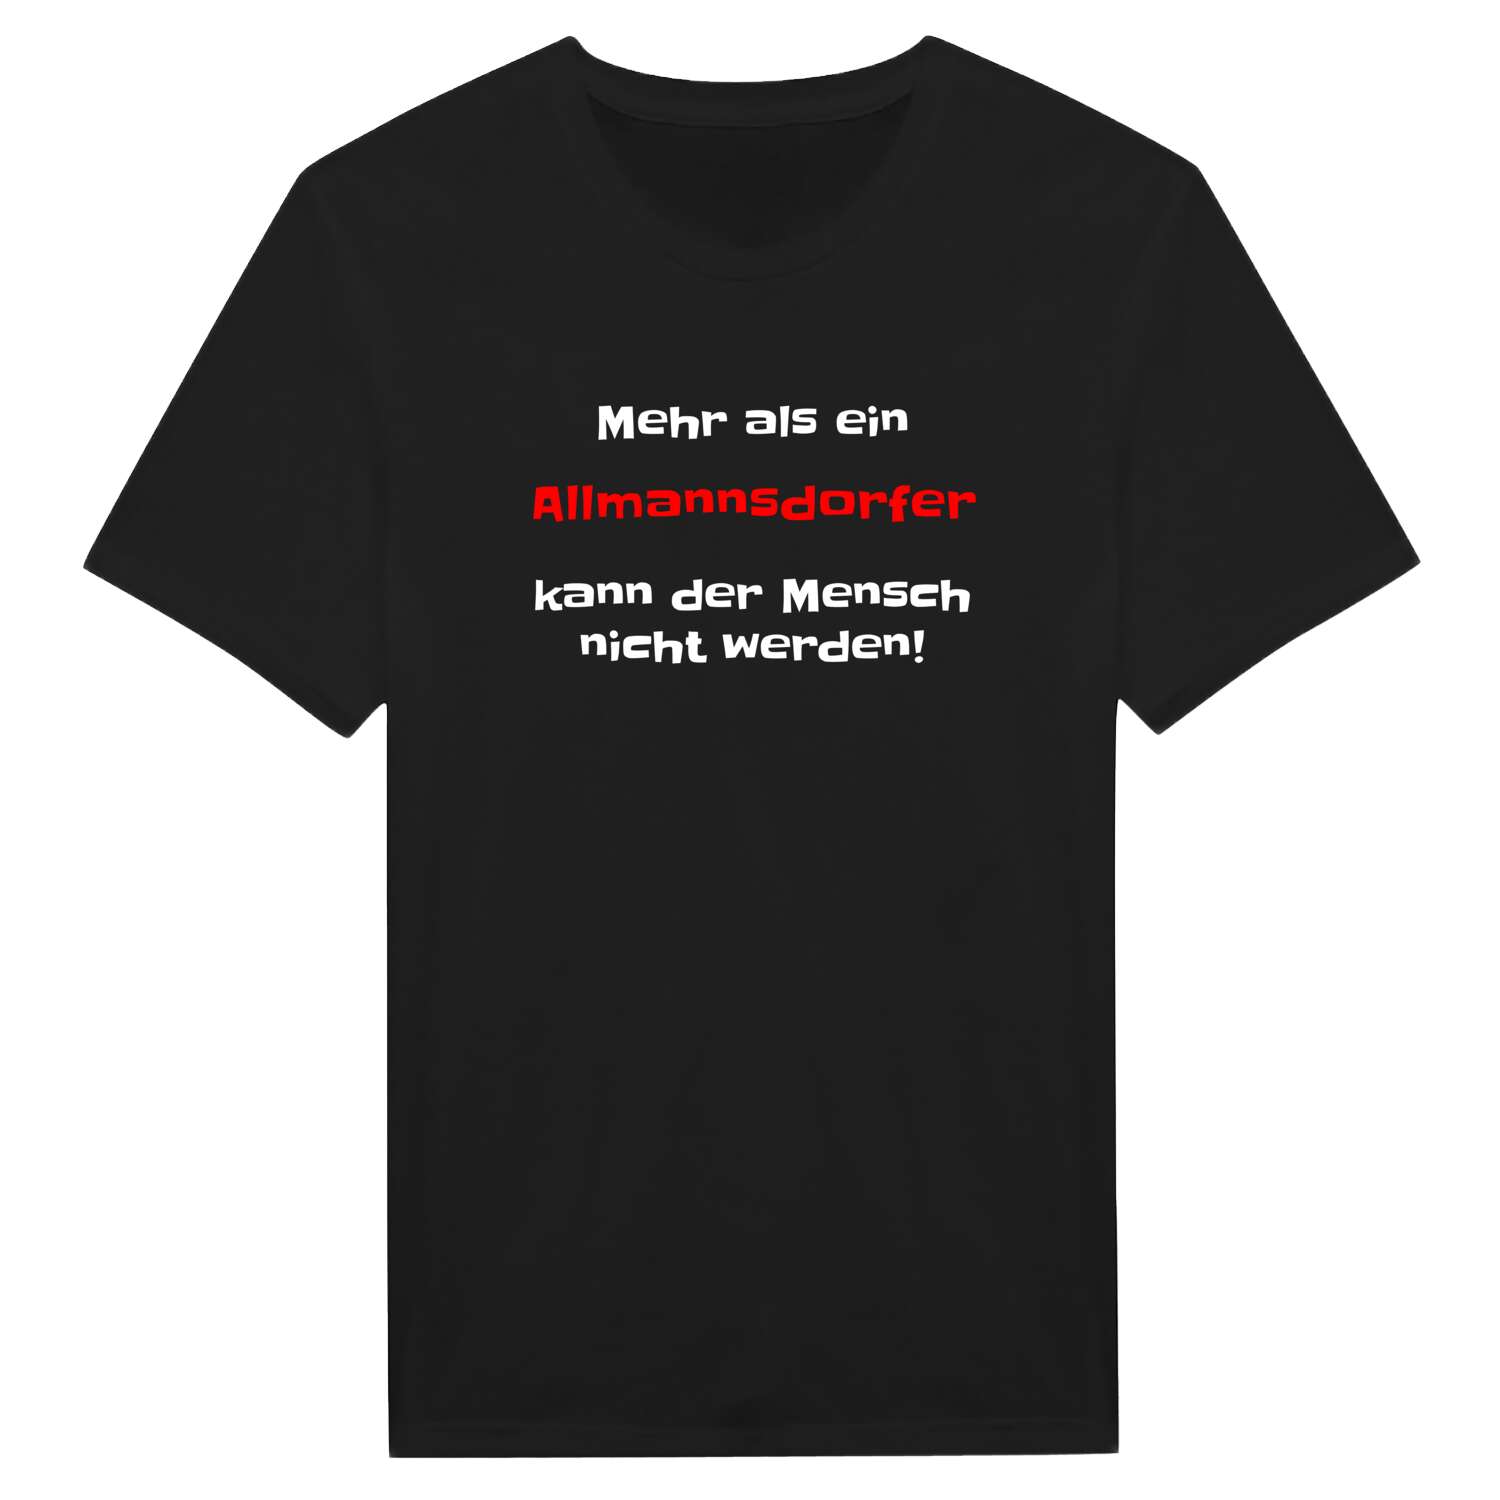 Allmannsdorf T-Shirt »Mehr als ein«